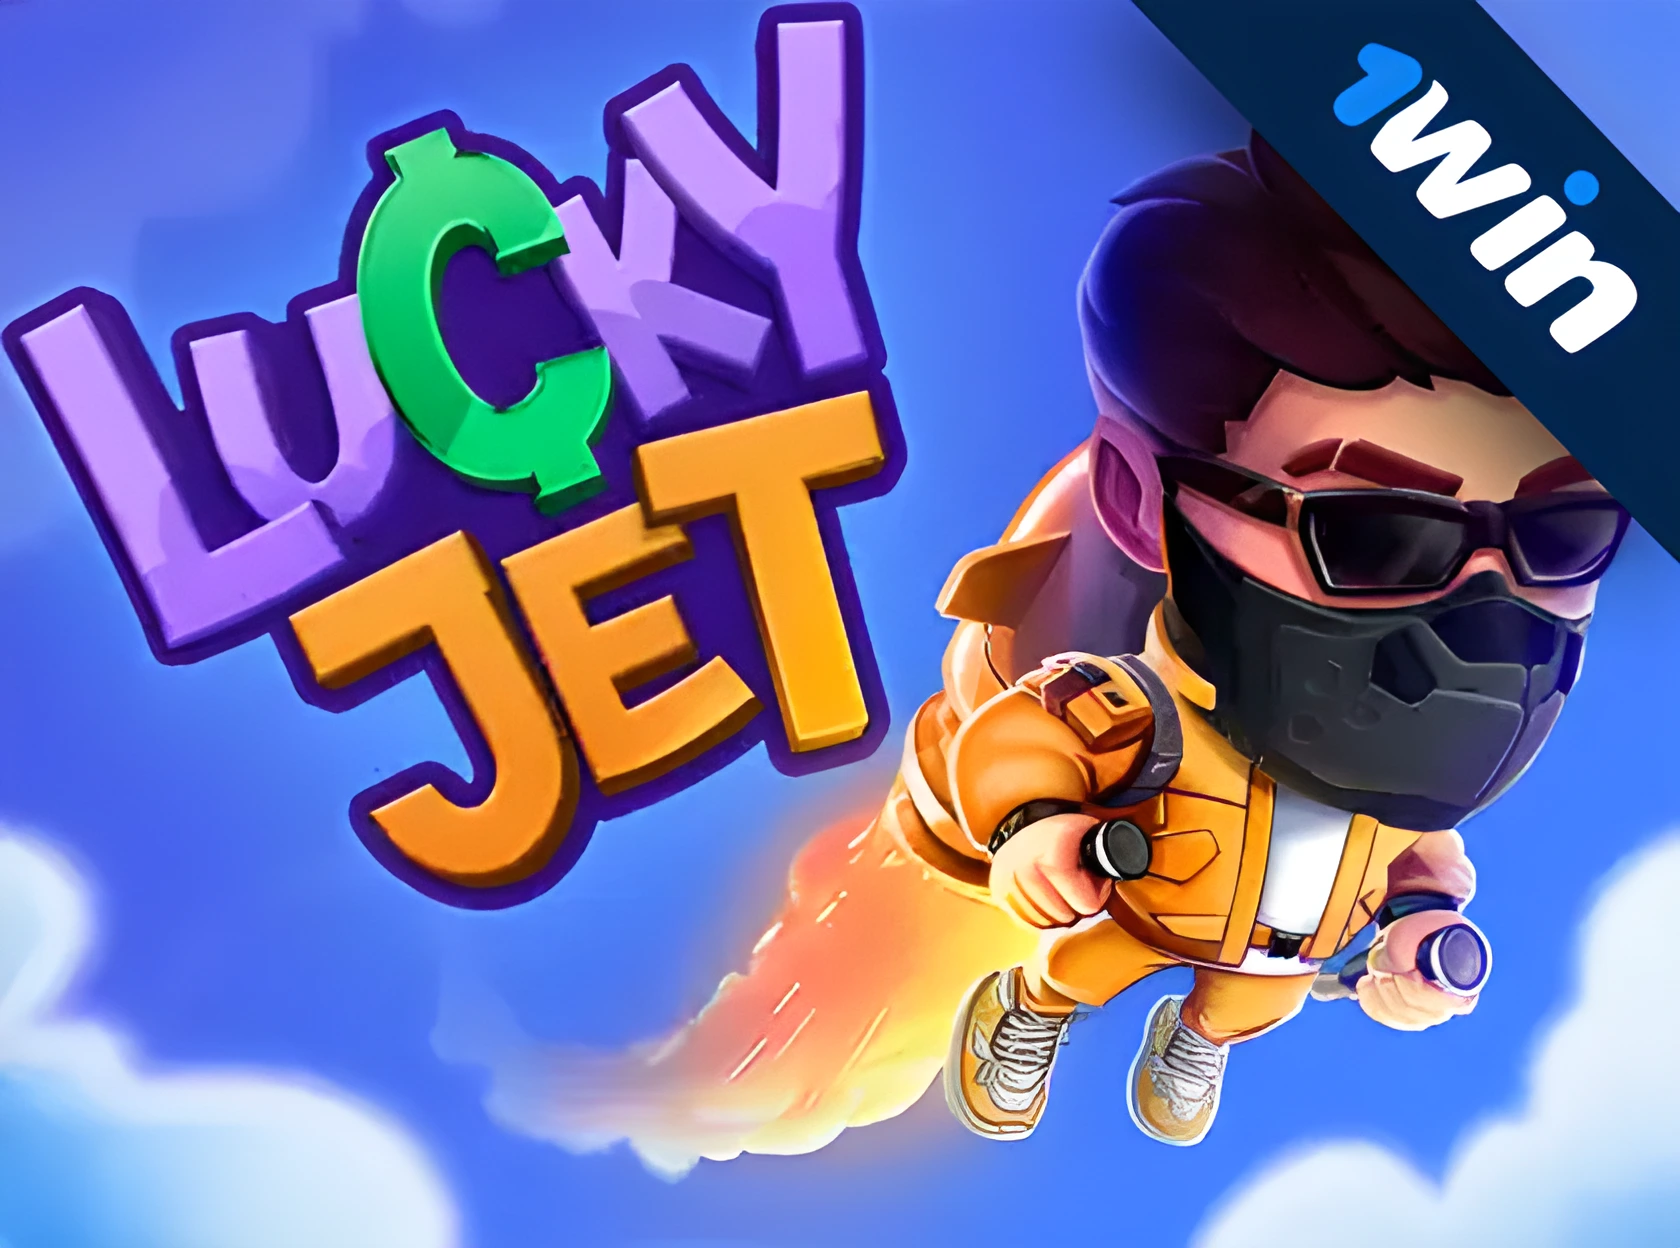 Lucky Jet 1win ржХрзНржпрж╛рж╕рж┐ржирзЛ ржерзЗржХрзЗ ржЕржирж▓рж╛ржЗржи рж╕рзНрж▓ржЯ